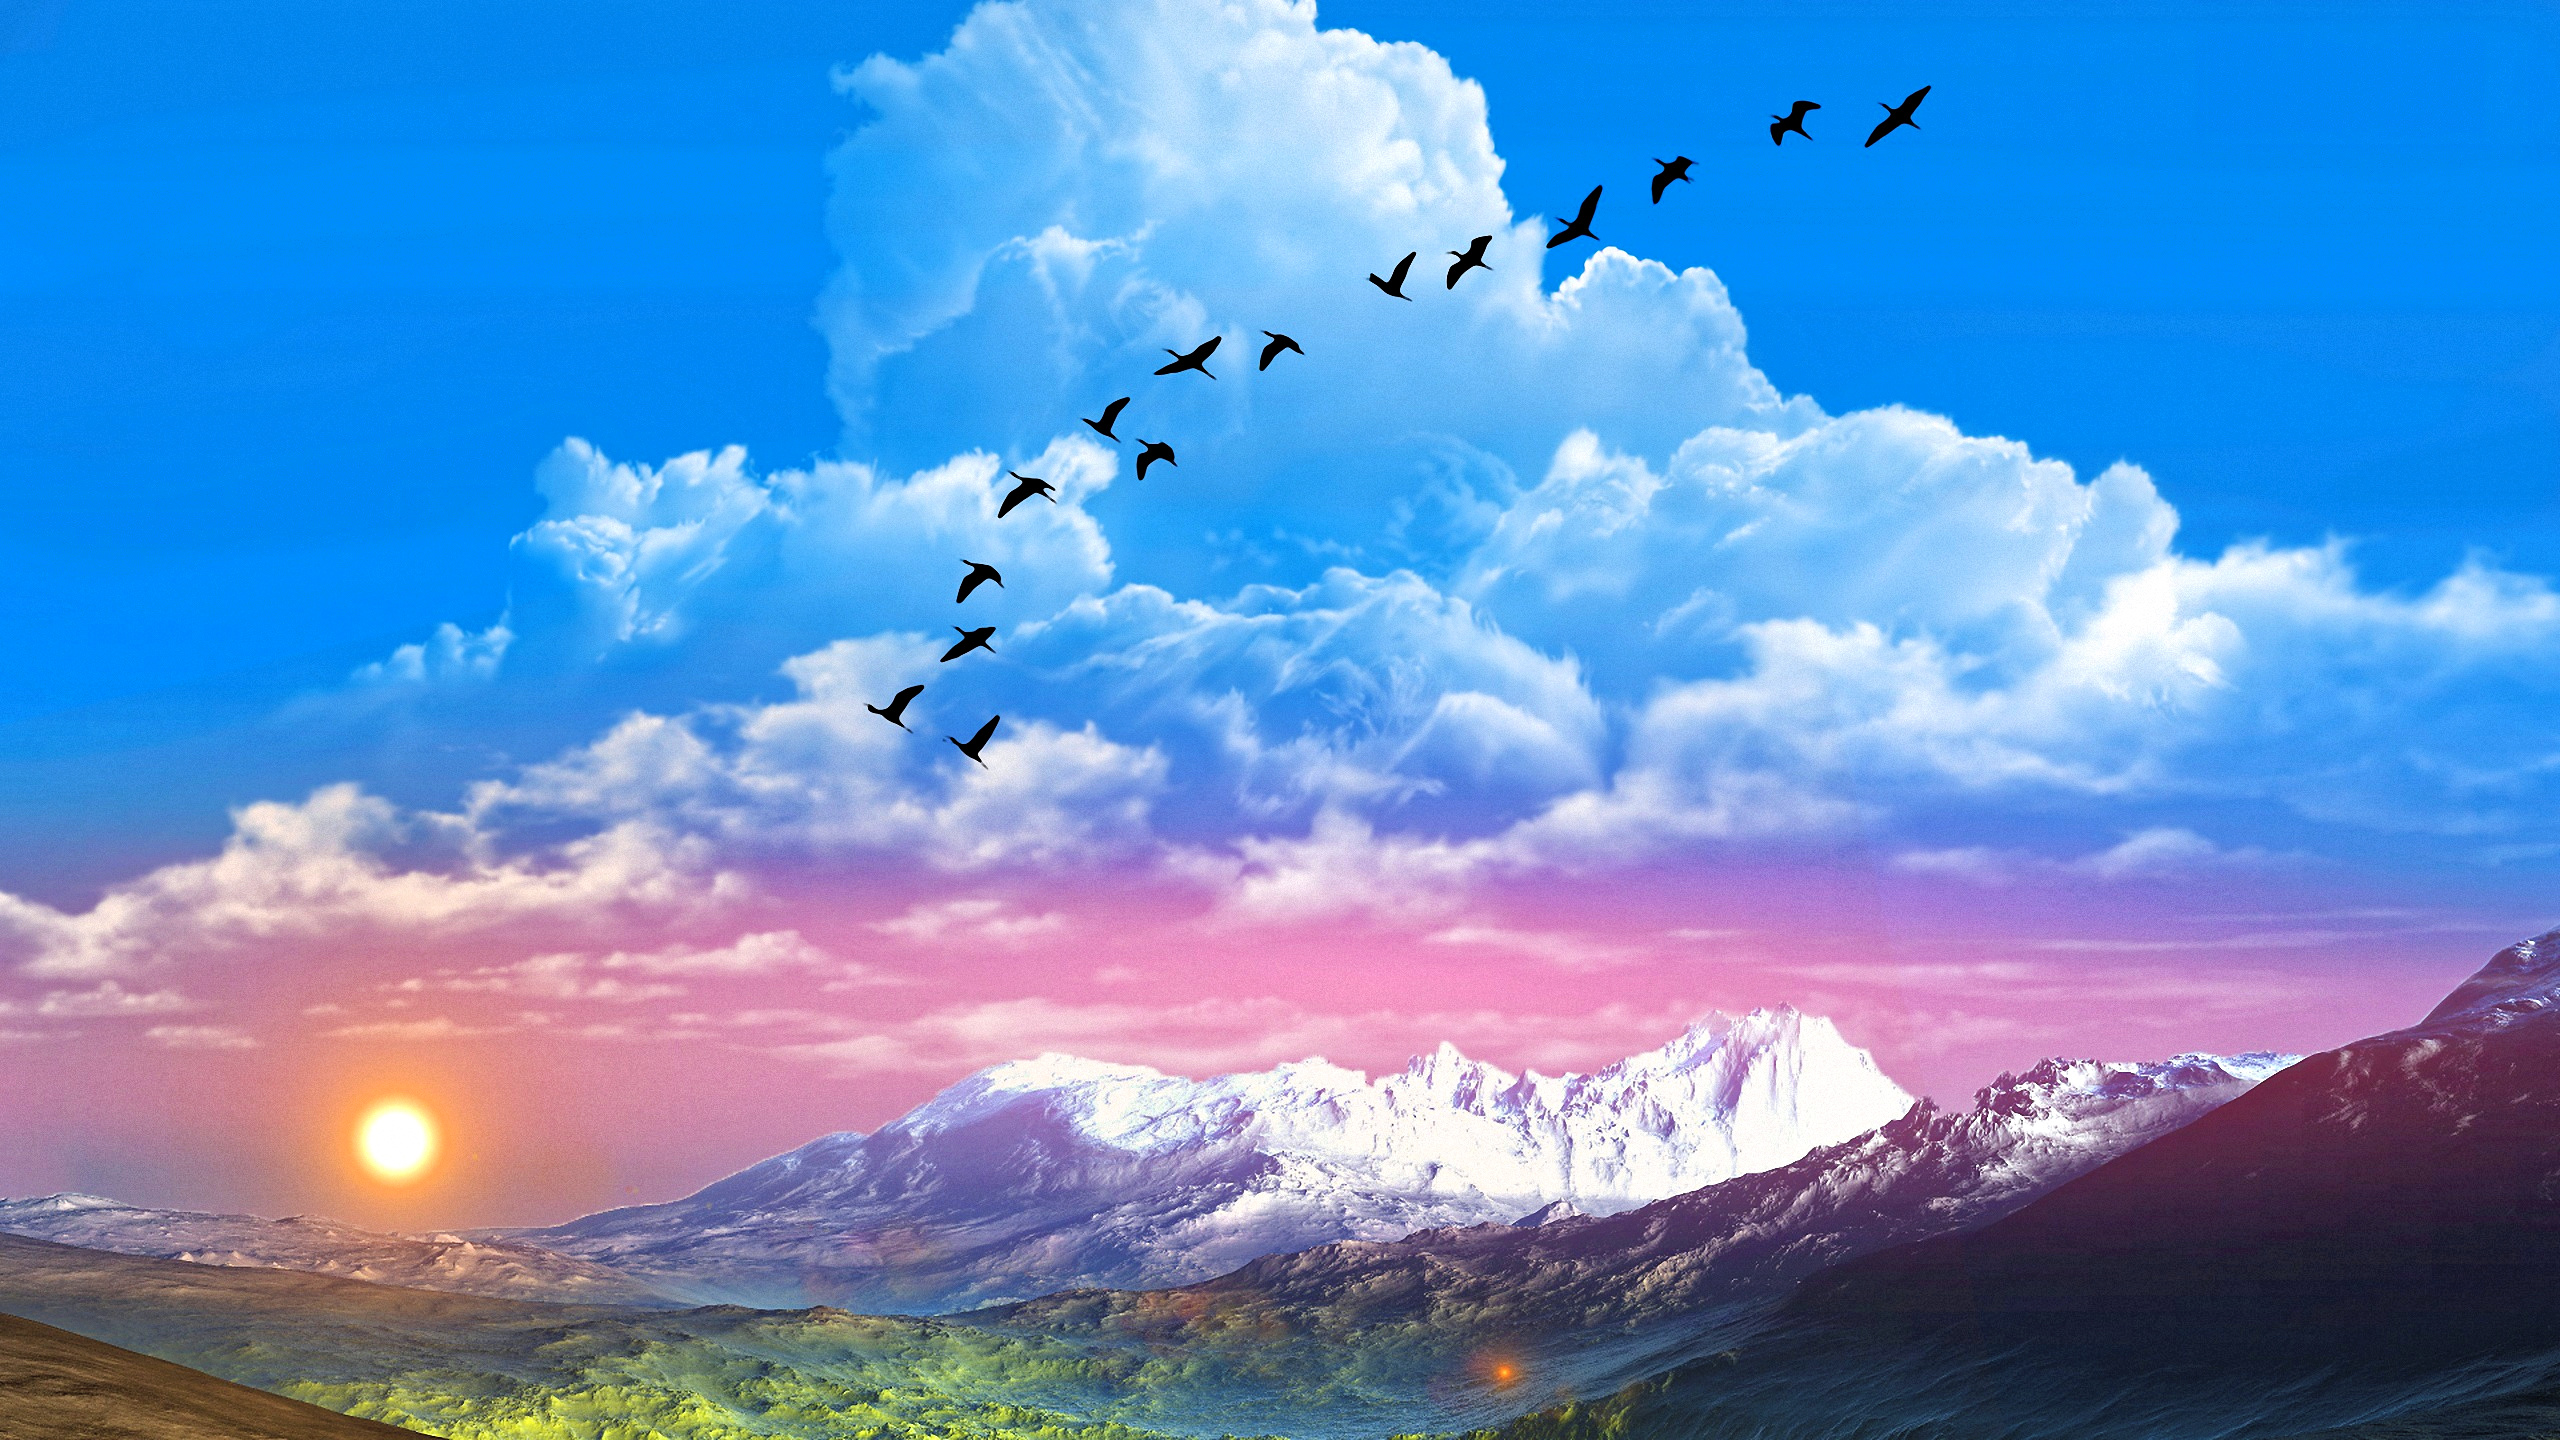 Скачать обои бесплатно Пейзаж, Птицы, Небо, Облака, Гора, Фантастика, Земля/природа картинка на рабочий стол ПК